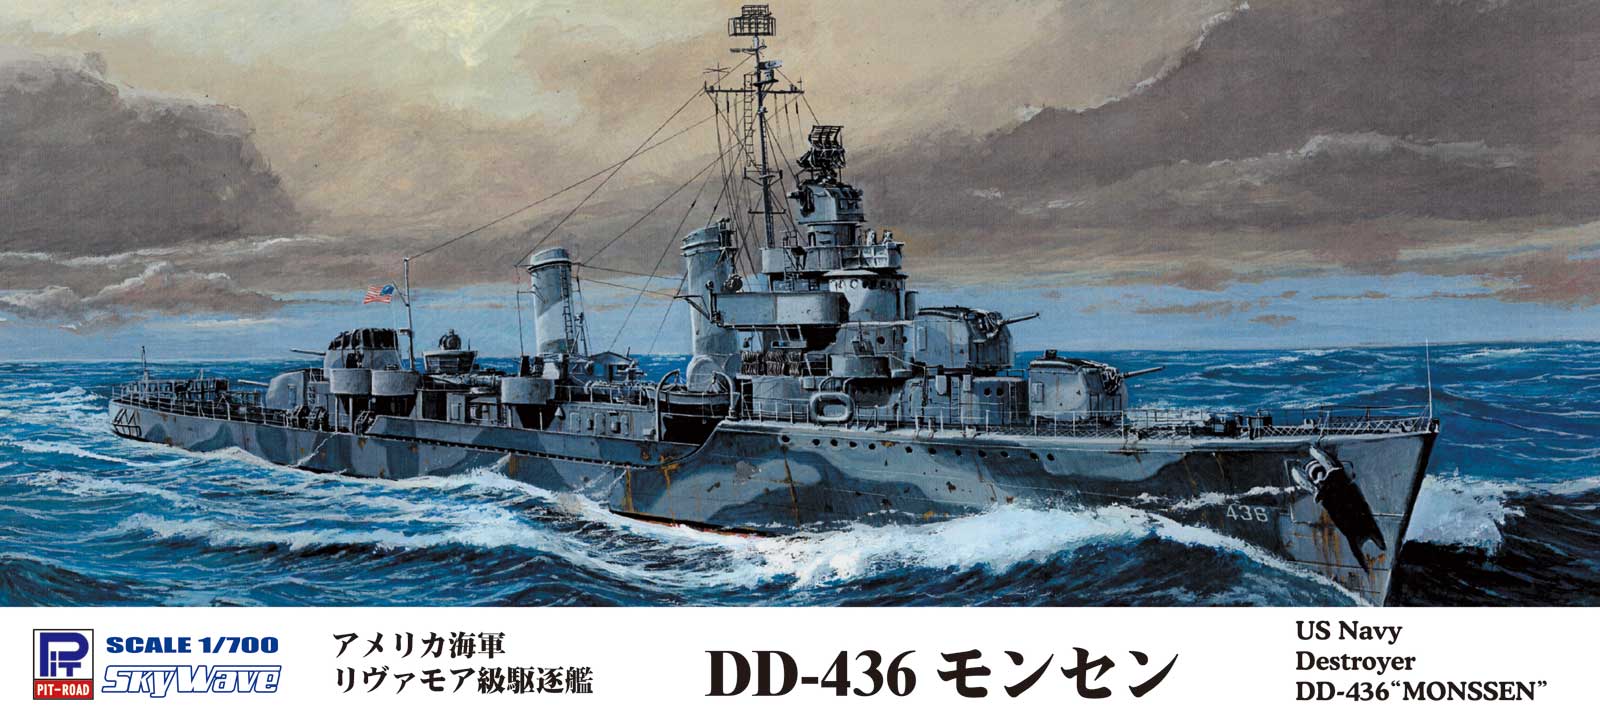 W214 1/700 アメリカ海軍 リヴァモア級駆逐艦 DD-436 モンセン